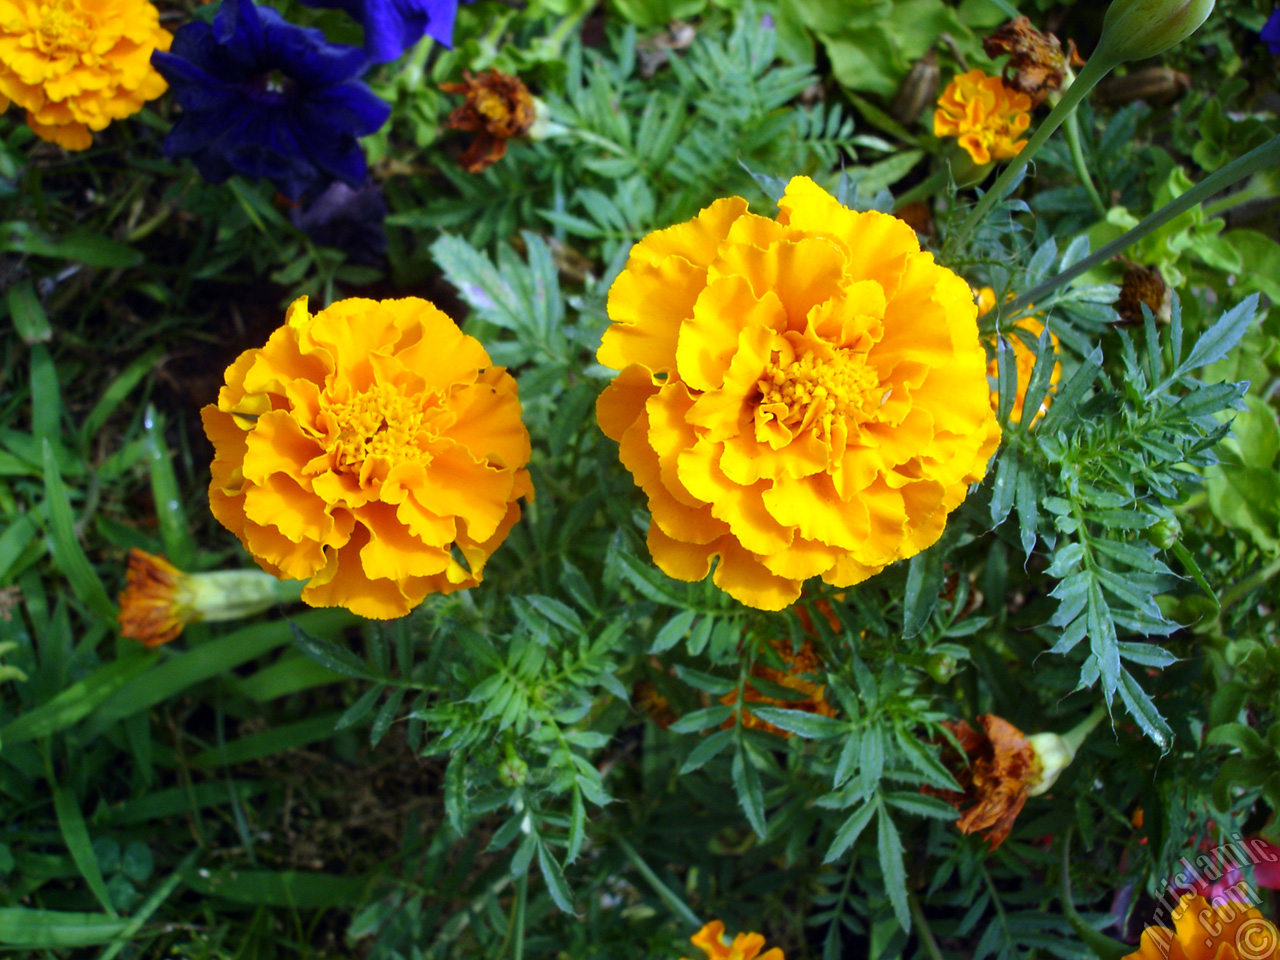 Marigold flower.
